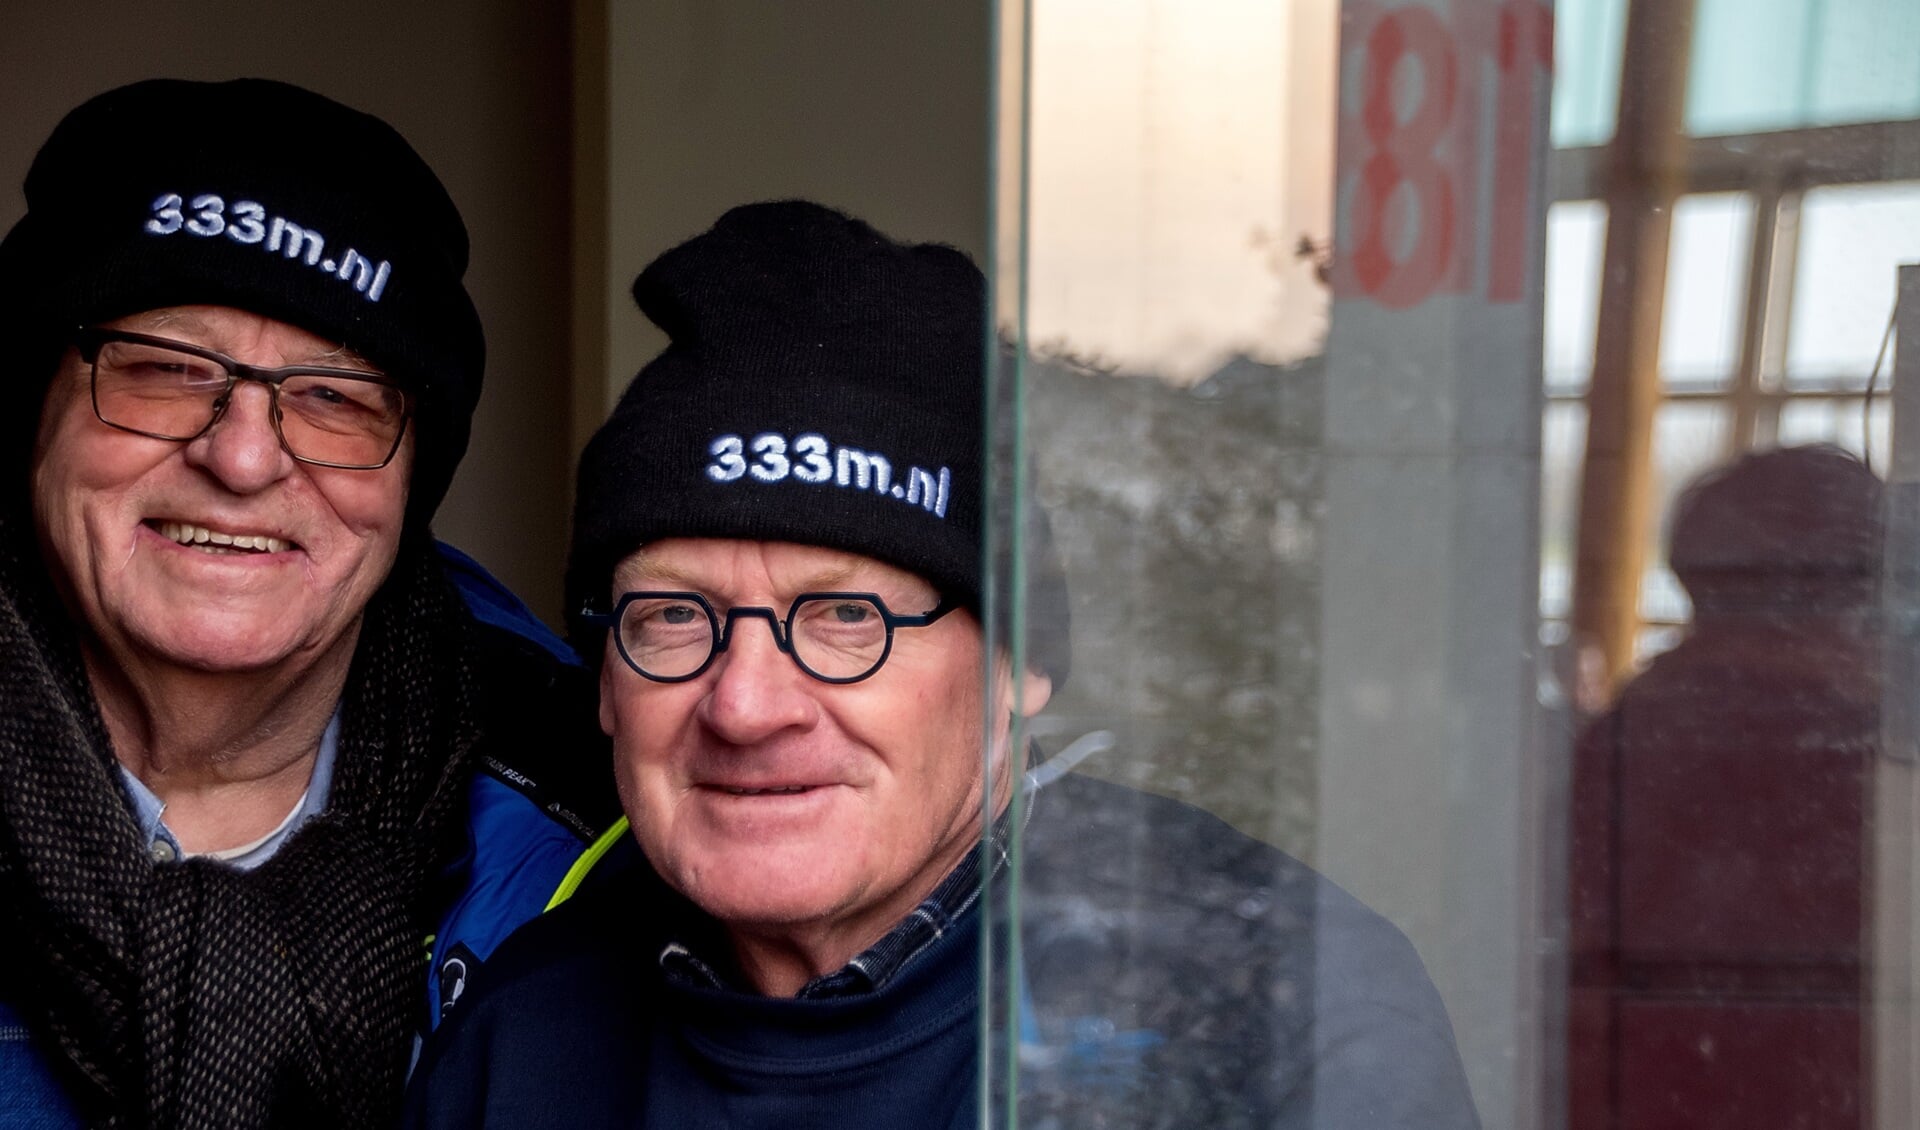 Oud-voorzitter Gert Hogervorst (links) en voorzitter John de Lange van de VIJL riepen tijdens de ijsperiode in maart via hun mutsen op om bij te dragen aan een ijsbaan van 333 meter. 